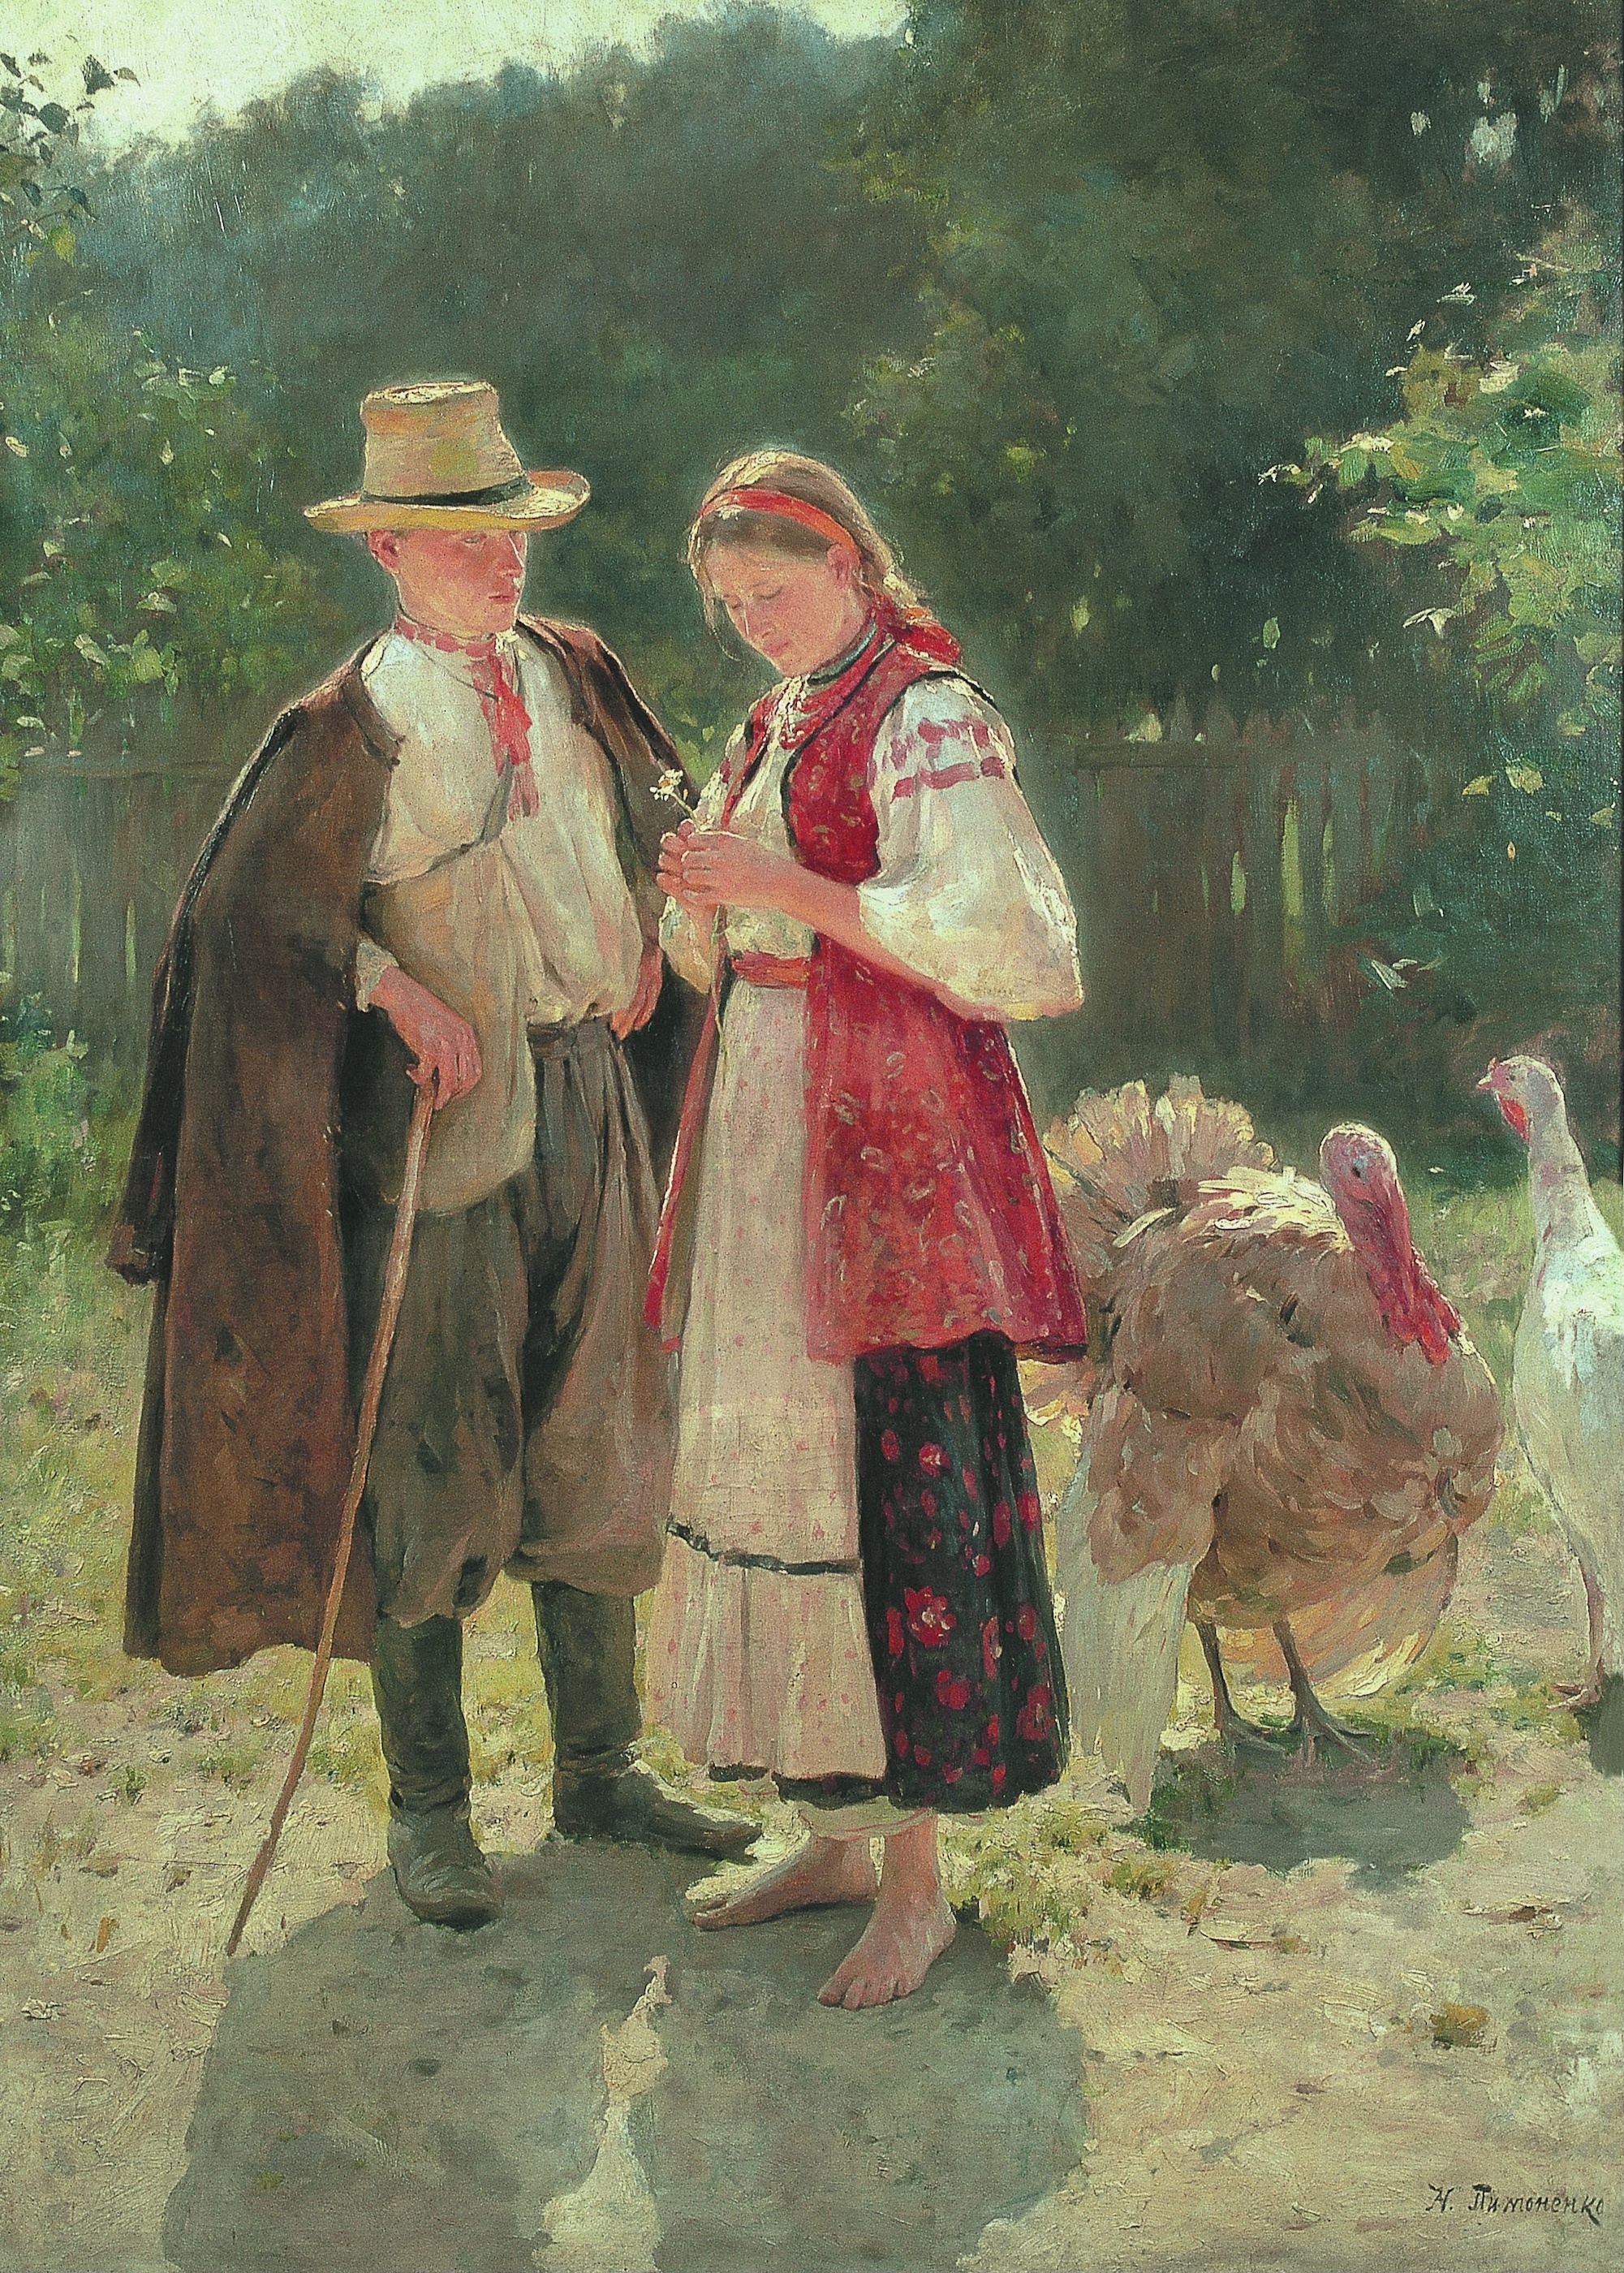 牧歌 by Mykola Pymonenko - 1907 年 - 195 x 140 釐米 